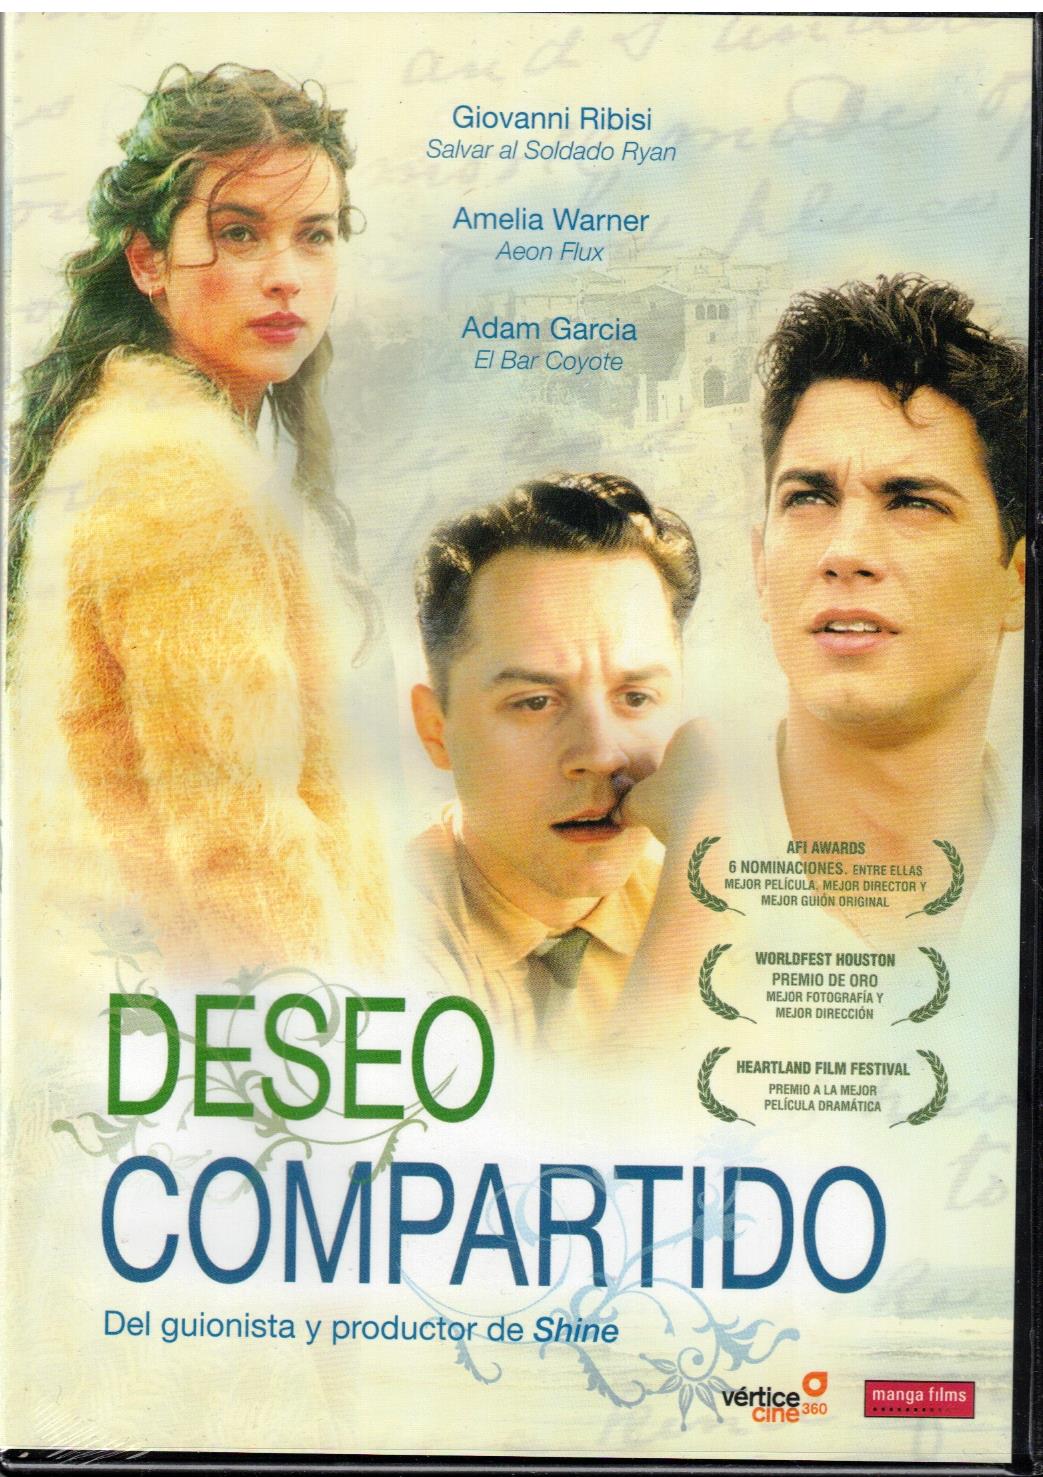 Deseo compartido (Love's Brother) (DVD Nuevo)